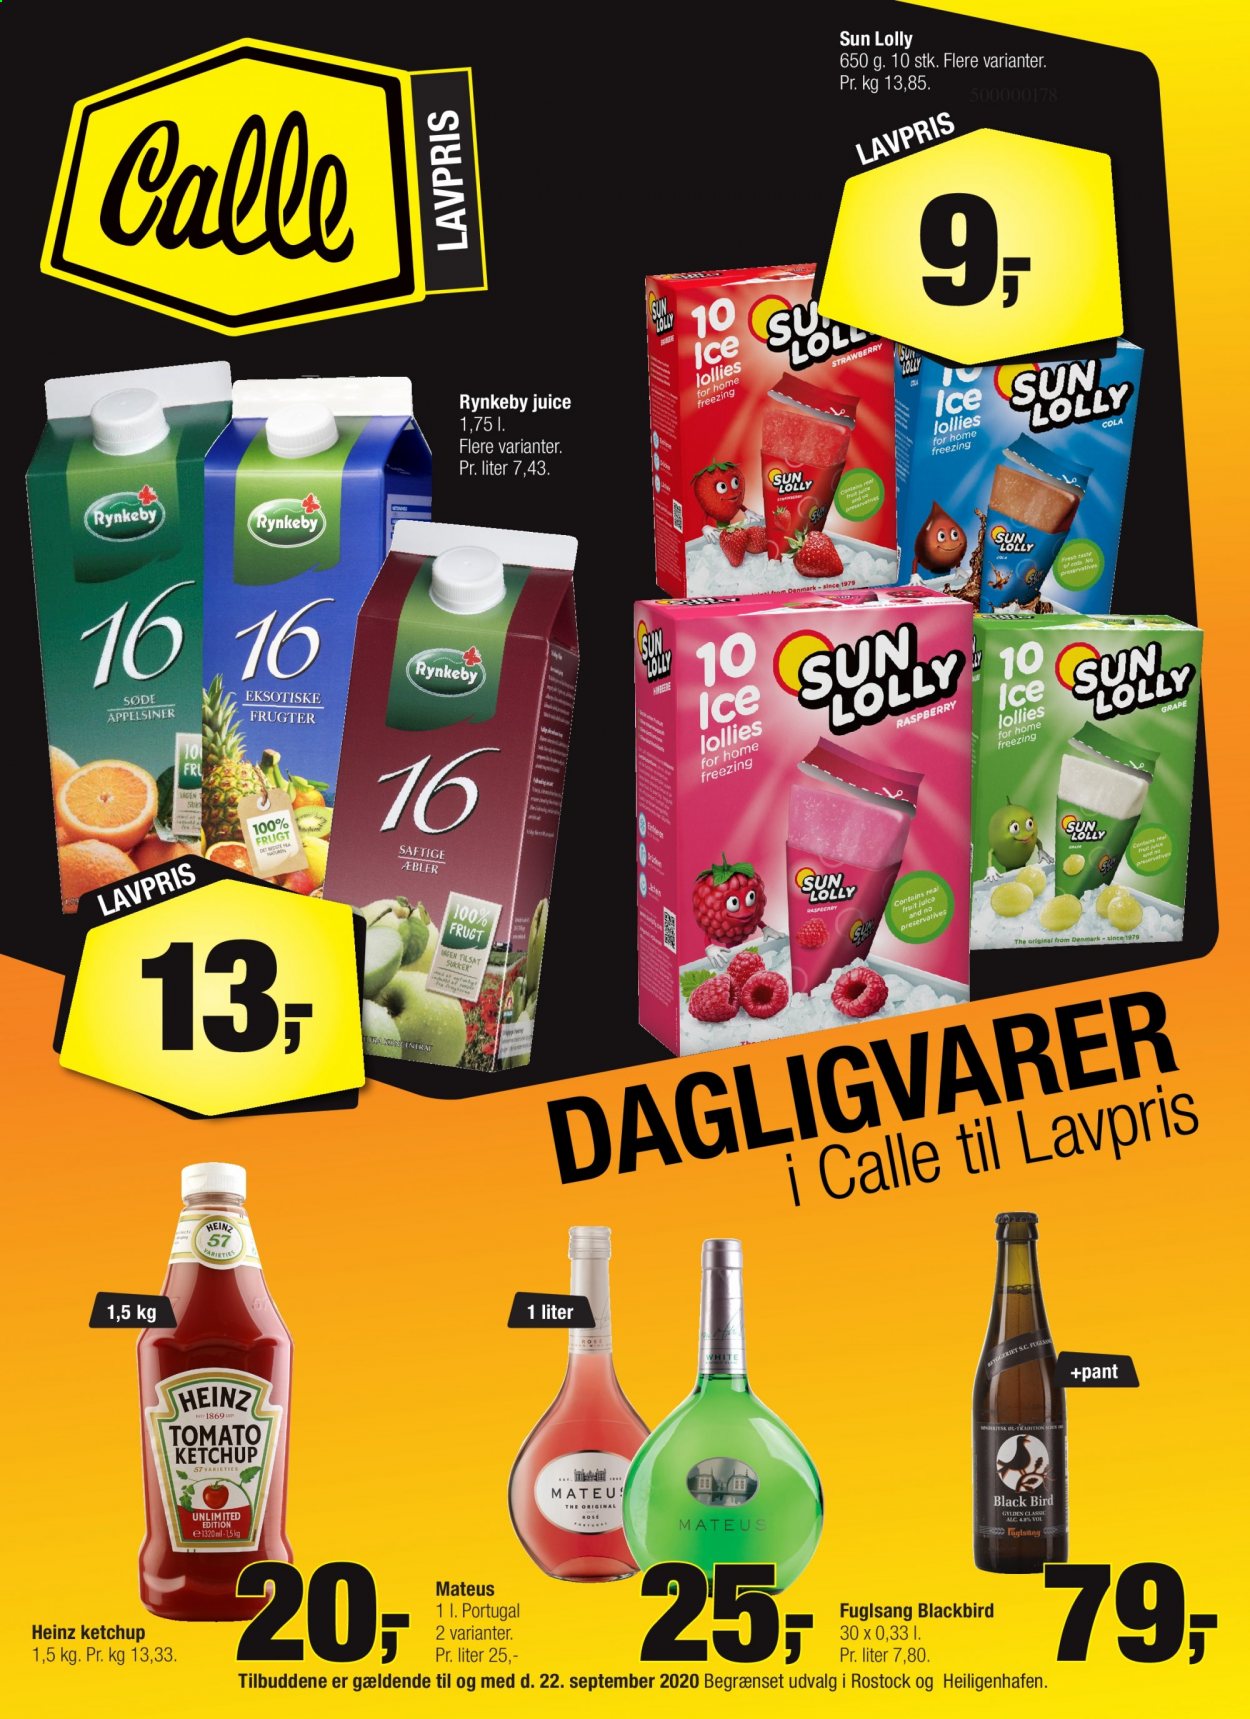 Calle reklamblad - 1/9 2021 - 22/9 2021 - varor från reklamblad - juice, ketchup, Heinz, sukker, Öl och alkoholfria öl. Sida 1.